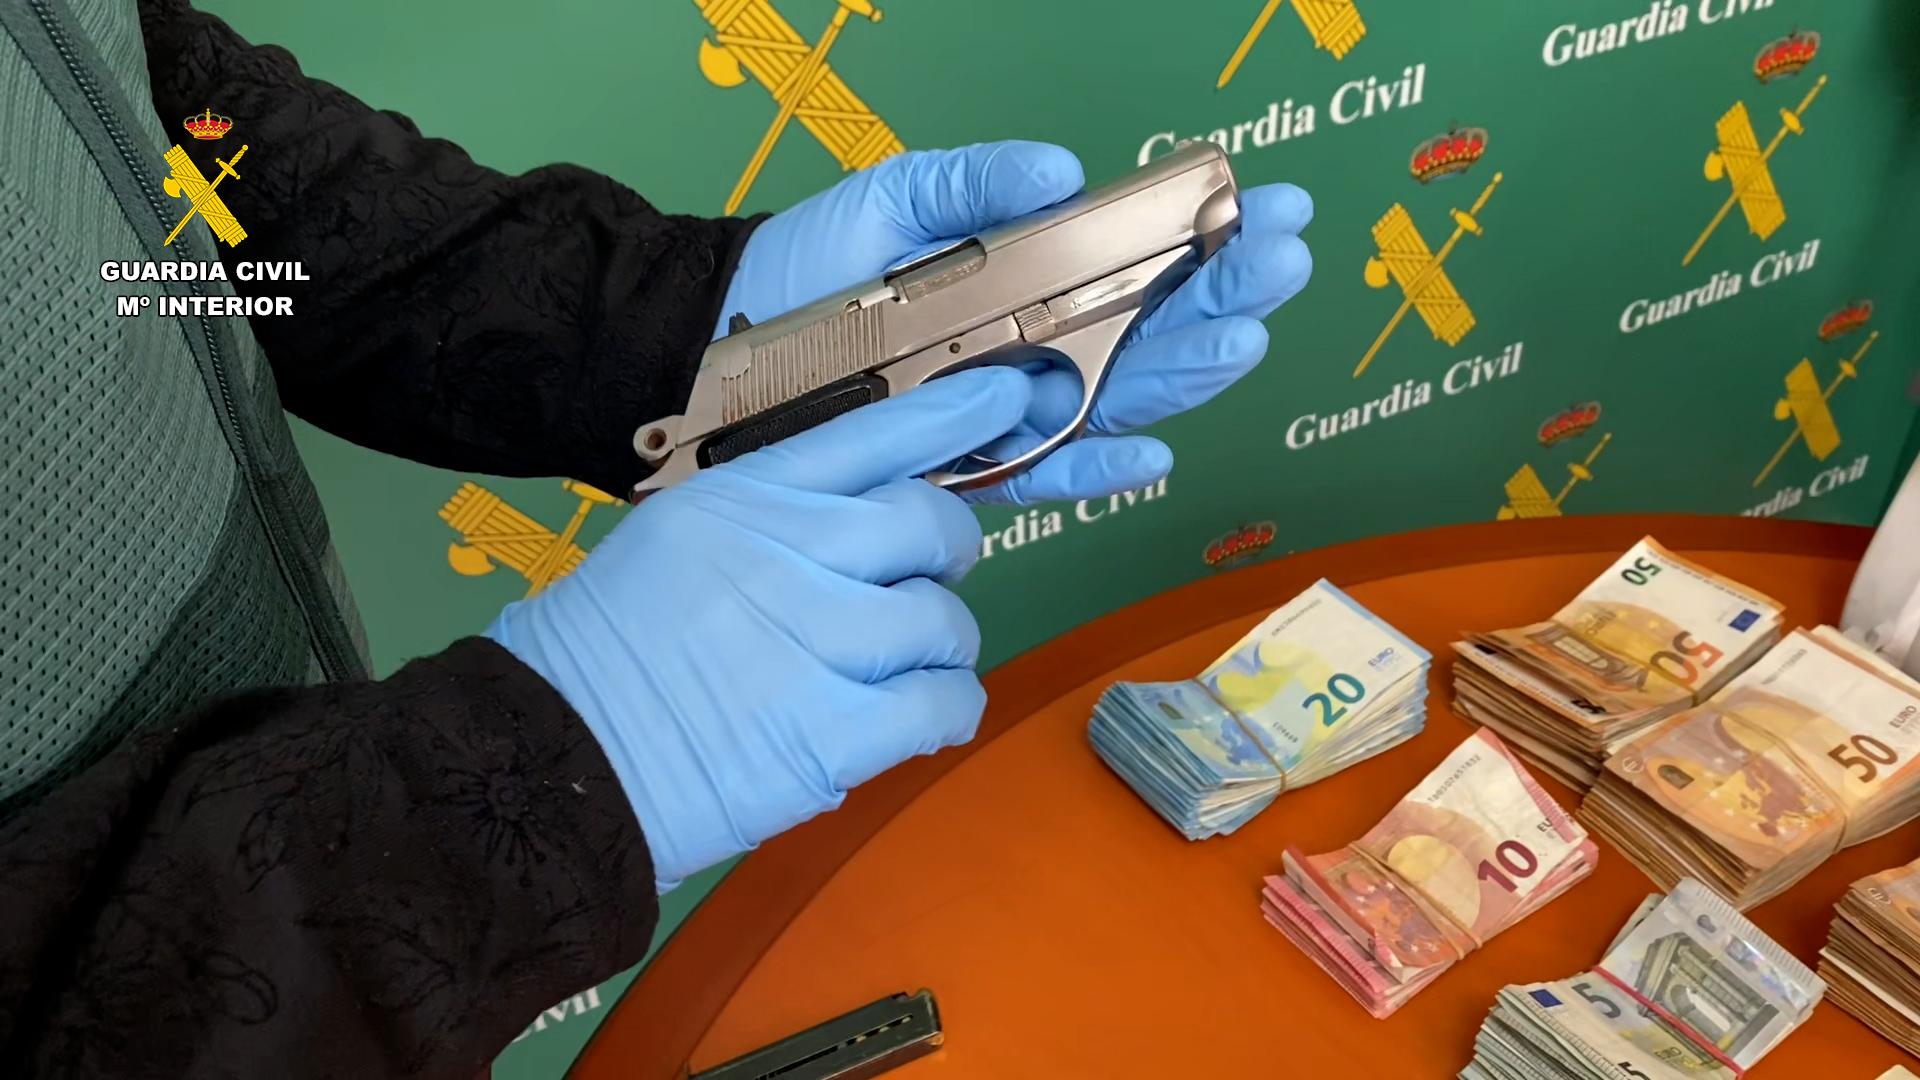 Imagen de una de las armas cortas y dinero incautados durante la operación